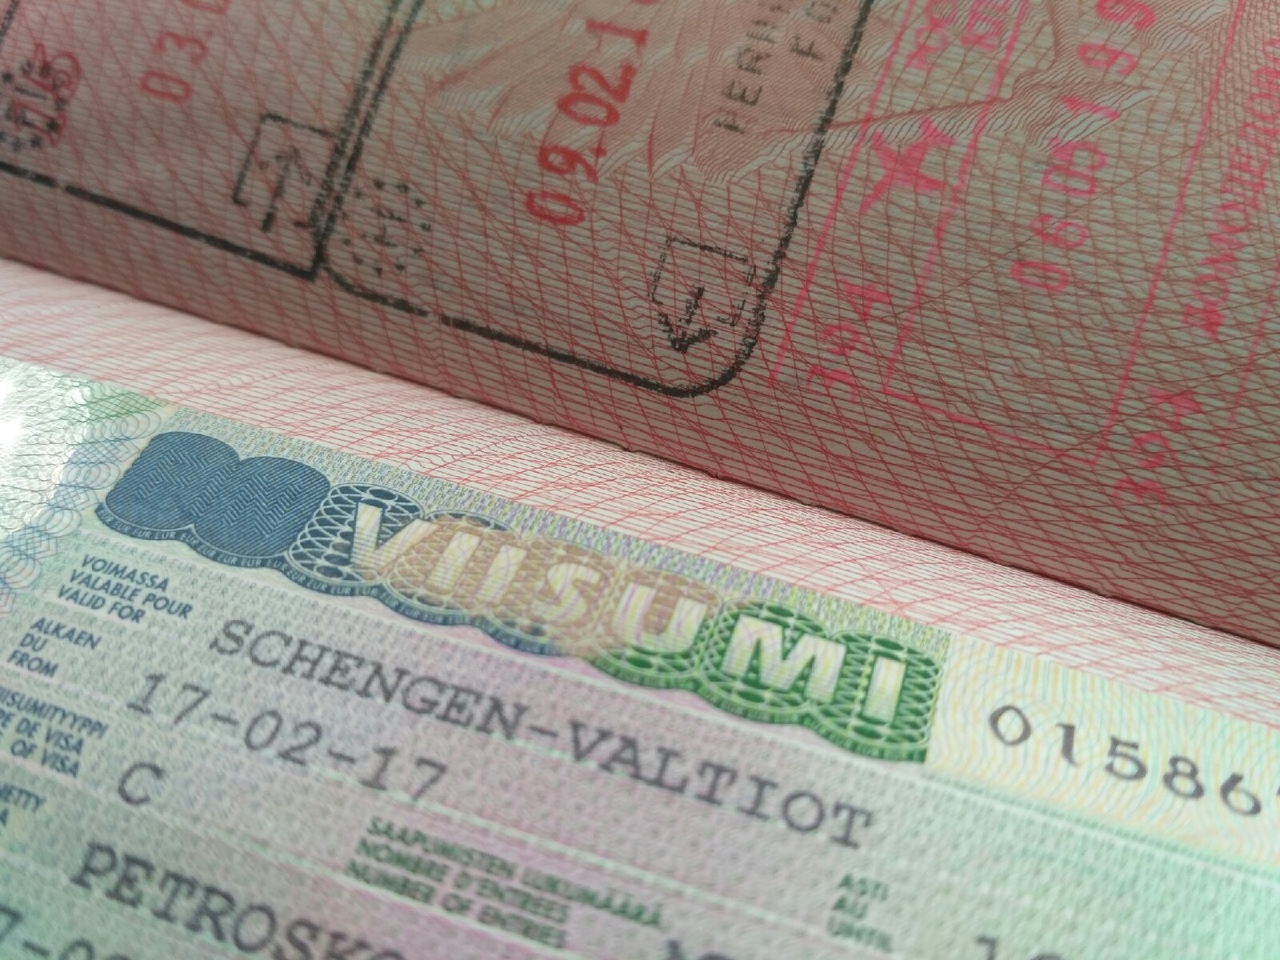 Viisumihakemukset käsitellään EU:n viisumisäännöstön mukaisesti. EU:lla ja Venäjällä on voimassa oleva viisumihelpotussopimus, mutta pakotteiden vuoksi sen soveltaminen on osittain keskeytetty. Kuva: Karjalan Sanomat 